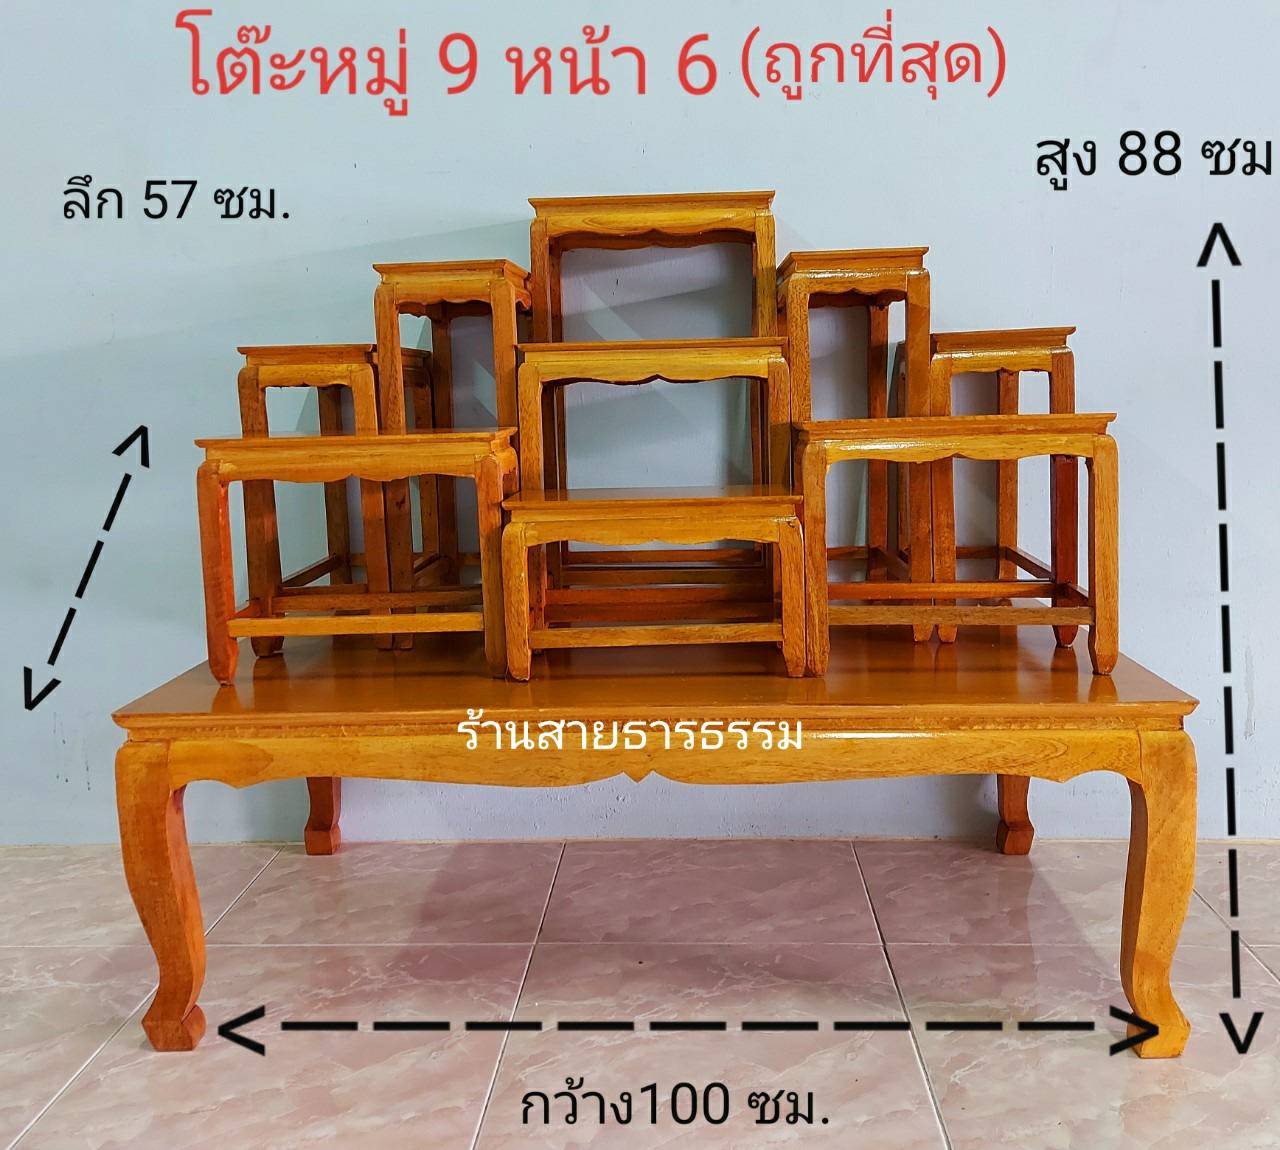  โต๊ะหมู่บูชา (ถูกมาก) โต๊ะหมู่ 9 หน้า 6 ยาว 1 เมตร สีโอ๊ค/สีแชล็ค แบบเรียบ ลงน้ำมัน งานสวย คุณภาพดี